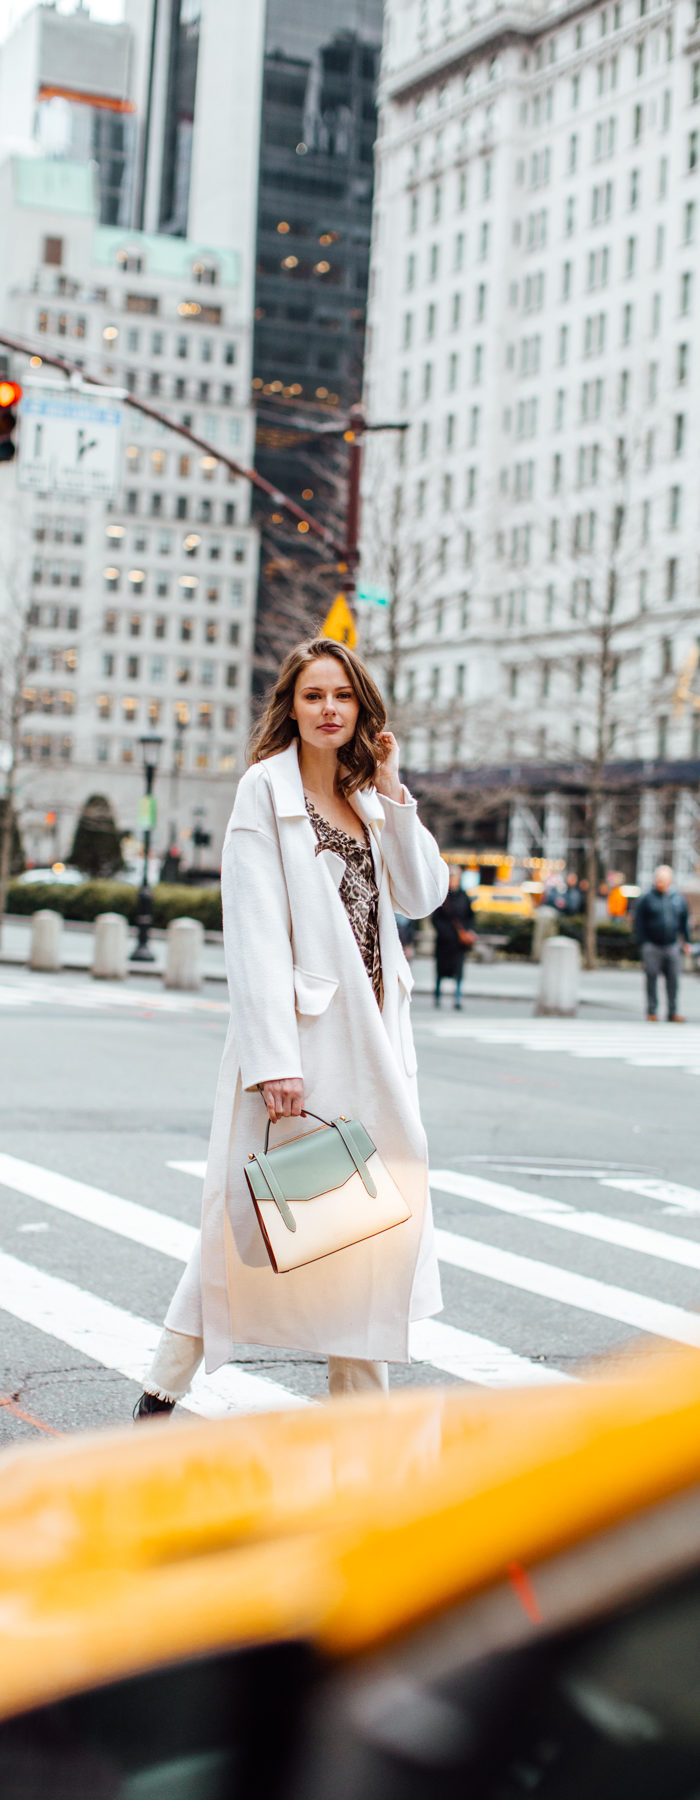 Alyssa Campanella of The A List blog shares her favorite restaurants in New York wearing Zimmermann suraya top, Strathberry midi allegro bag, and Miista yana boots.